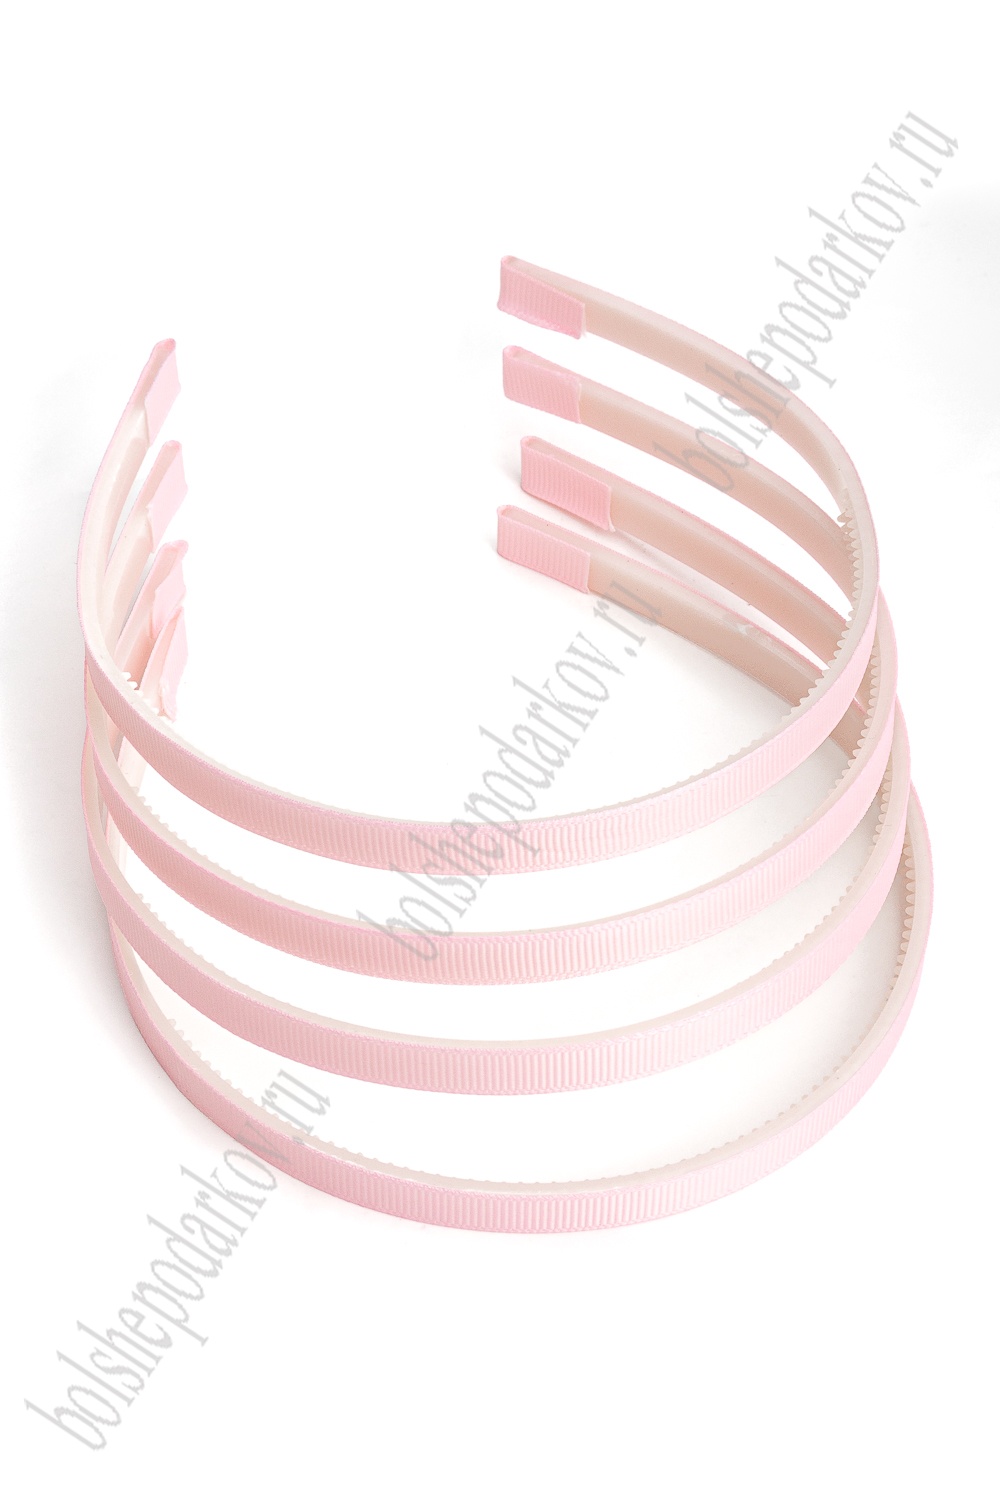 Ободки 1 см, пластик. с репсовой тканью (20 шт) SF-1466, розовый №04